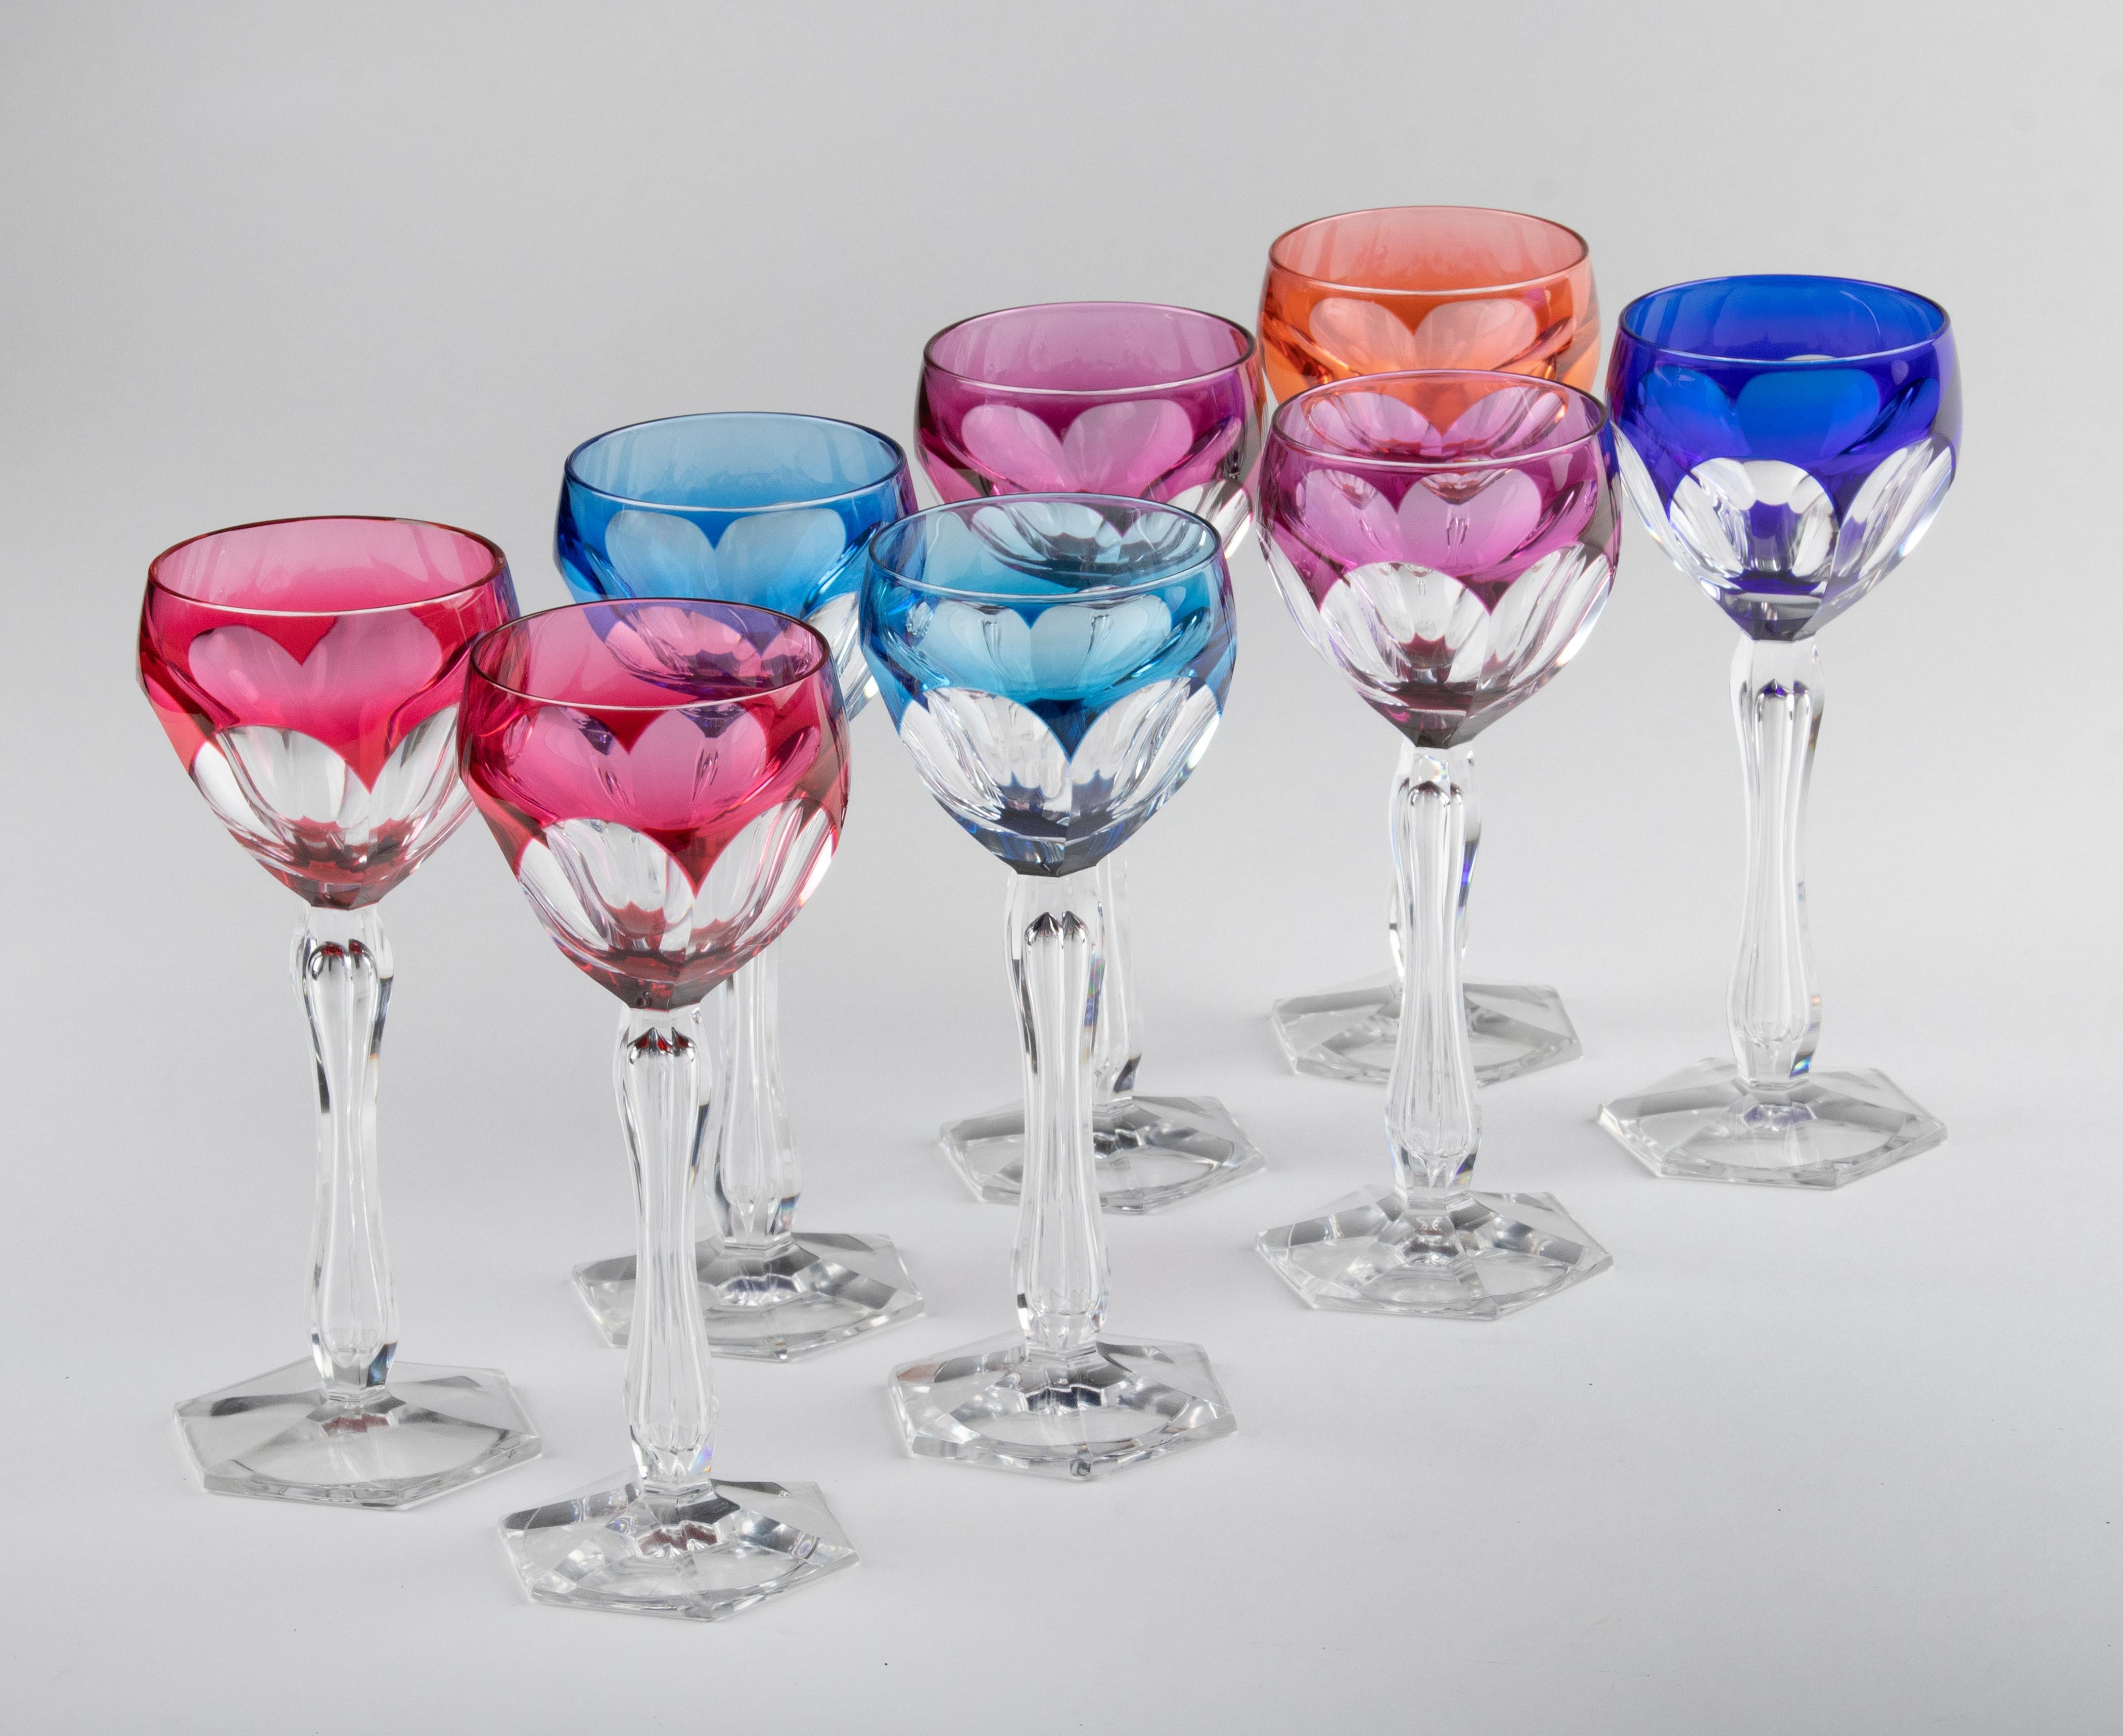 Magnifique ensemble de 8 verres à vin colorés en cristal, réalisé par le fabricant belge Val Saint Lambert. Les verres ont une couleur profonde et claire et de belles coupes. L'intérieur de la tige est joliment décoré. Les lunettes ne sont pas